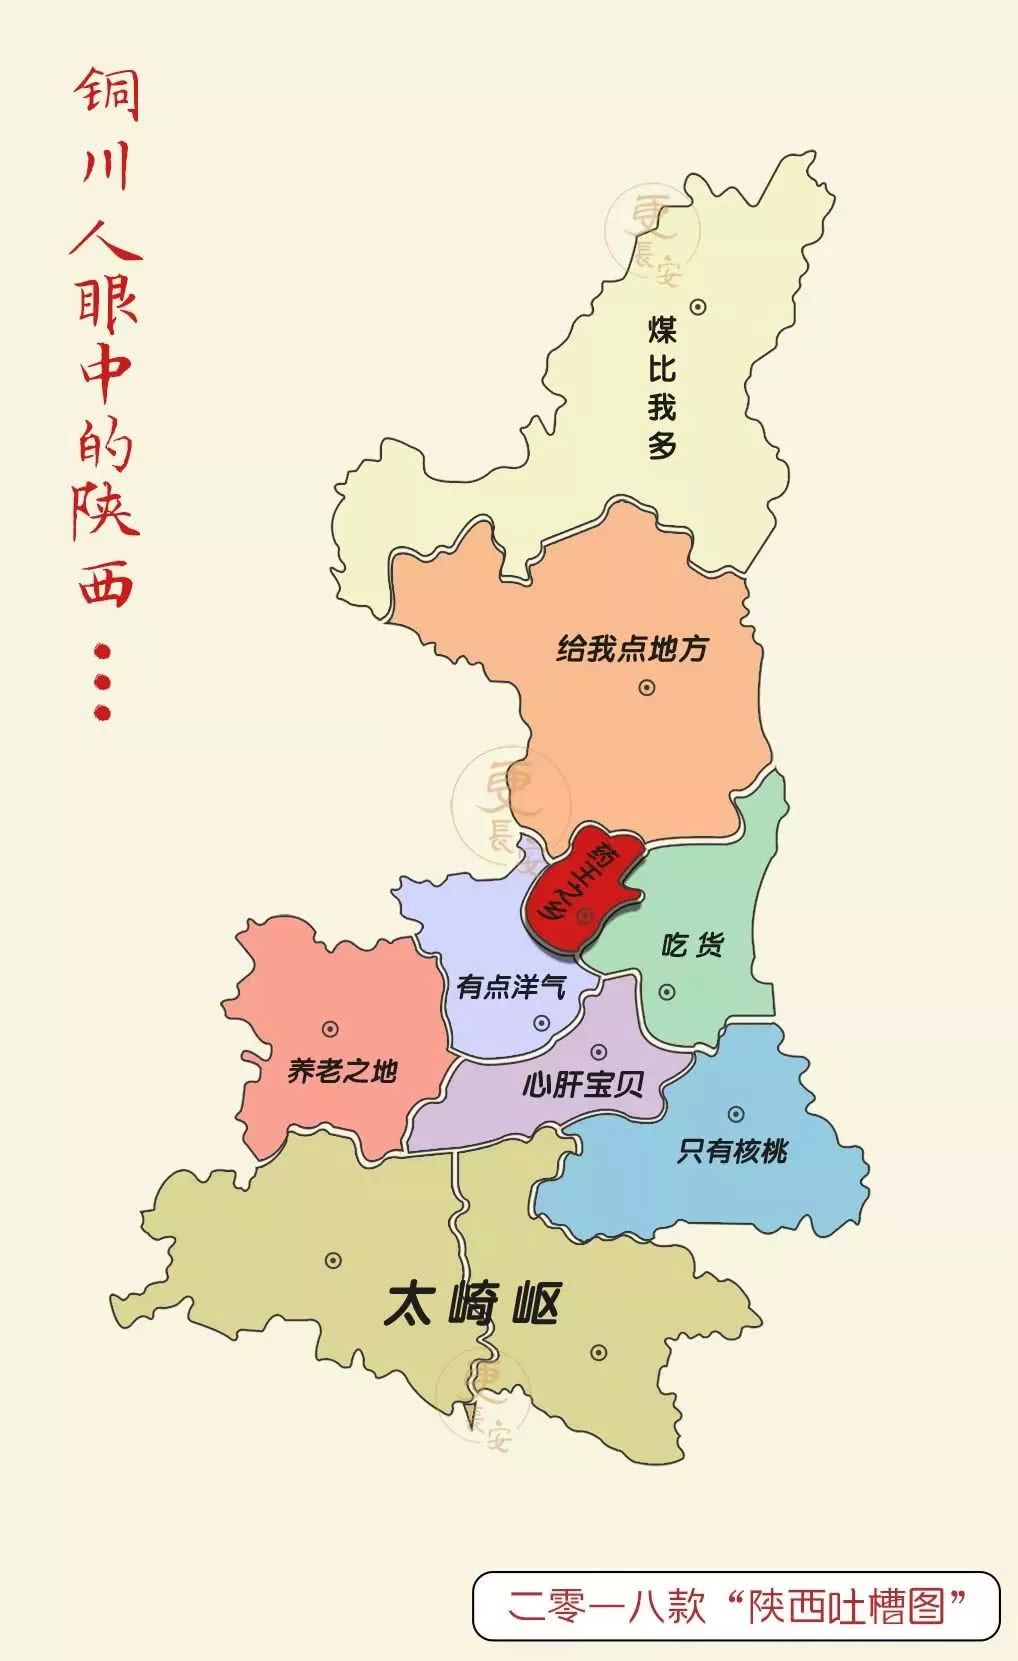 2018陕西吐槽地图出炉,咸阳,彬县,长武,旬邑,人都炸锅